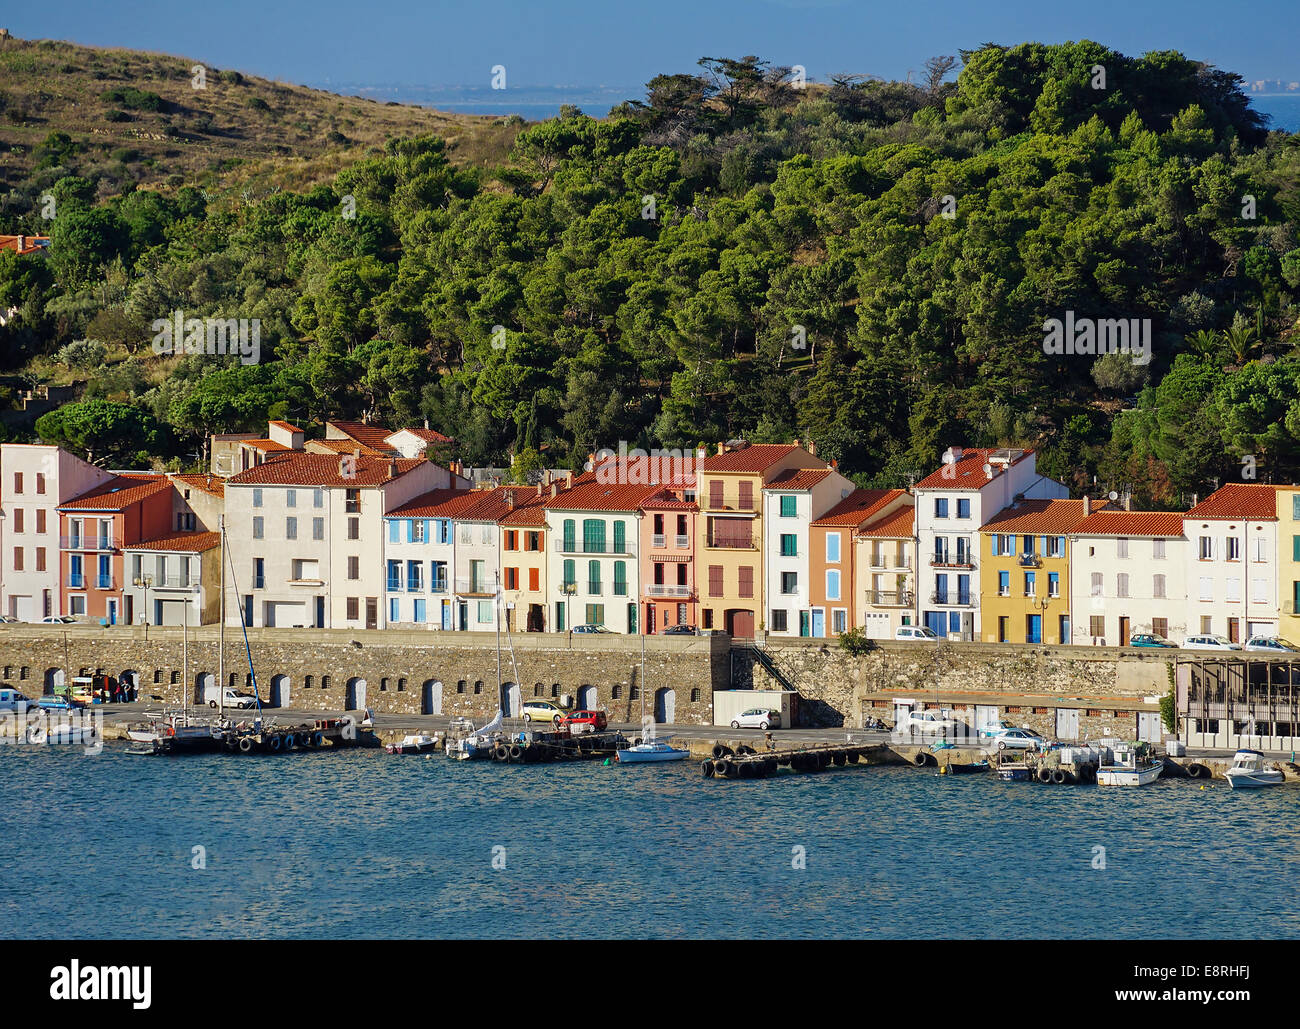 Maisons au bord de l'eau colorée dans le port de Port-Vendres, Roussillon, Pyrénées Orientales, côte Vermeille, France Banque D'Images